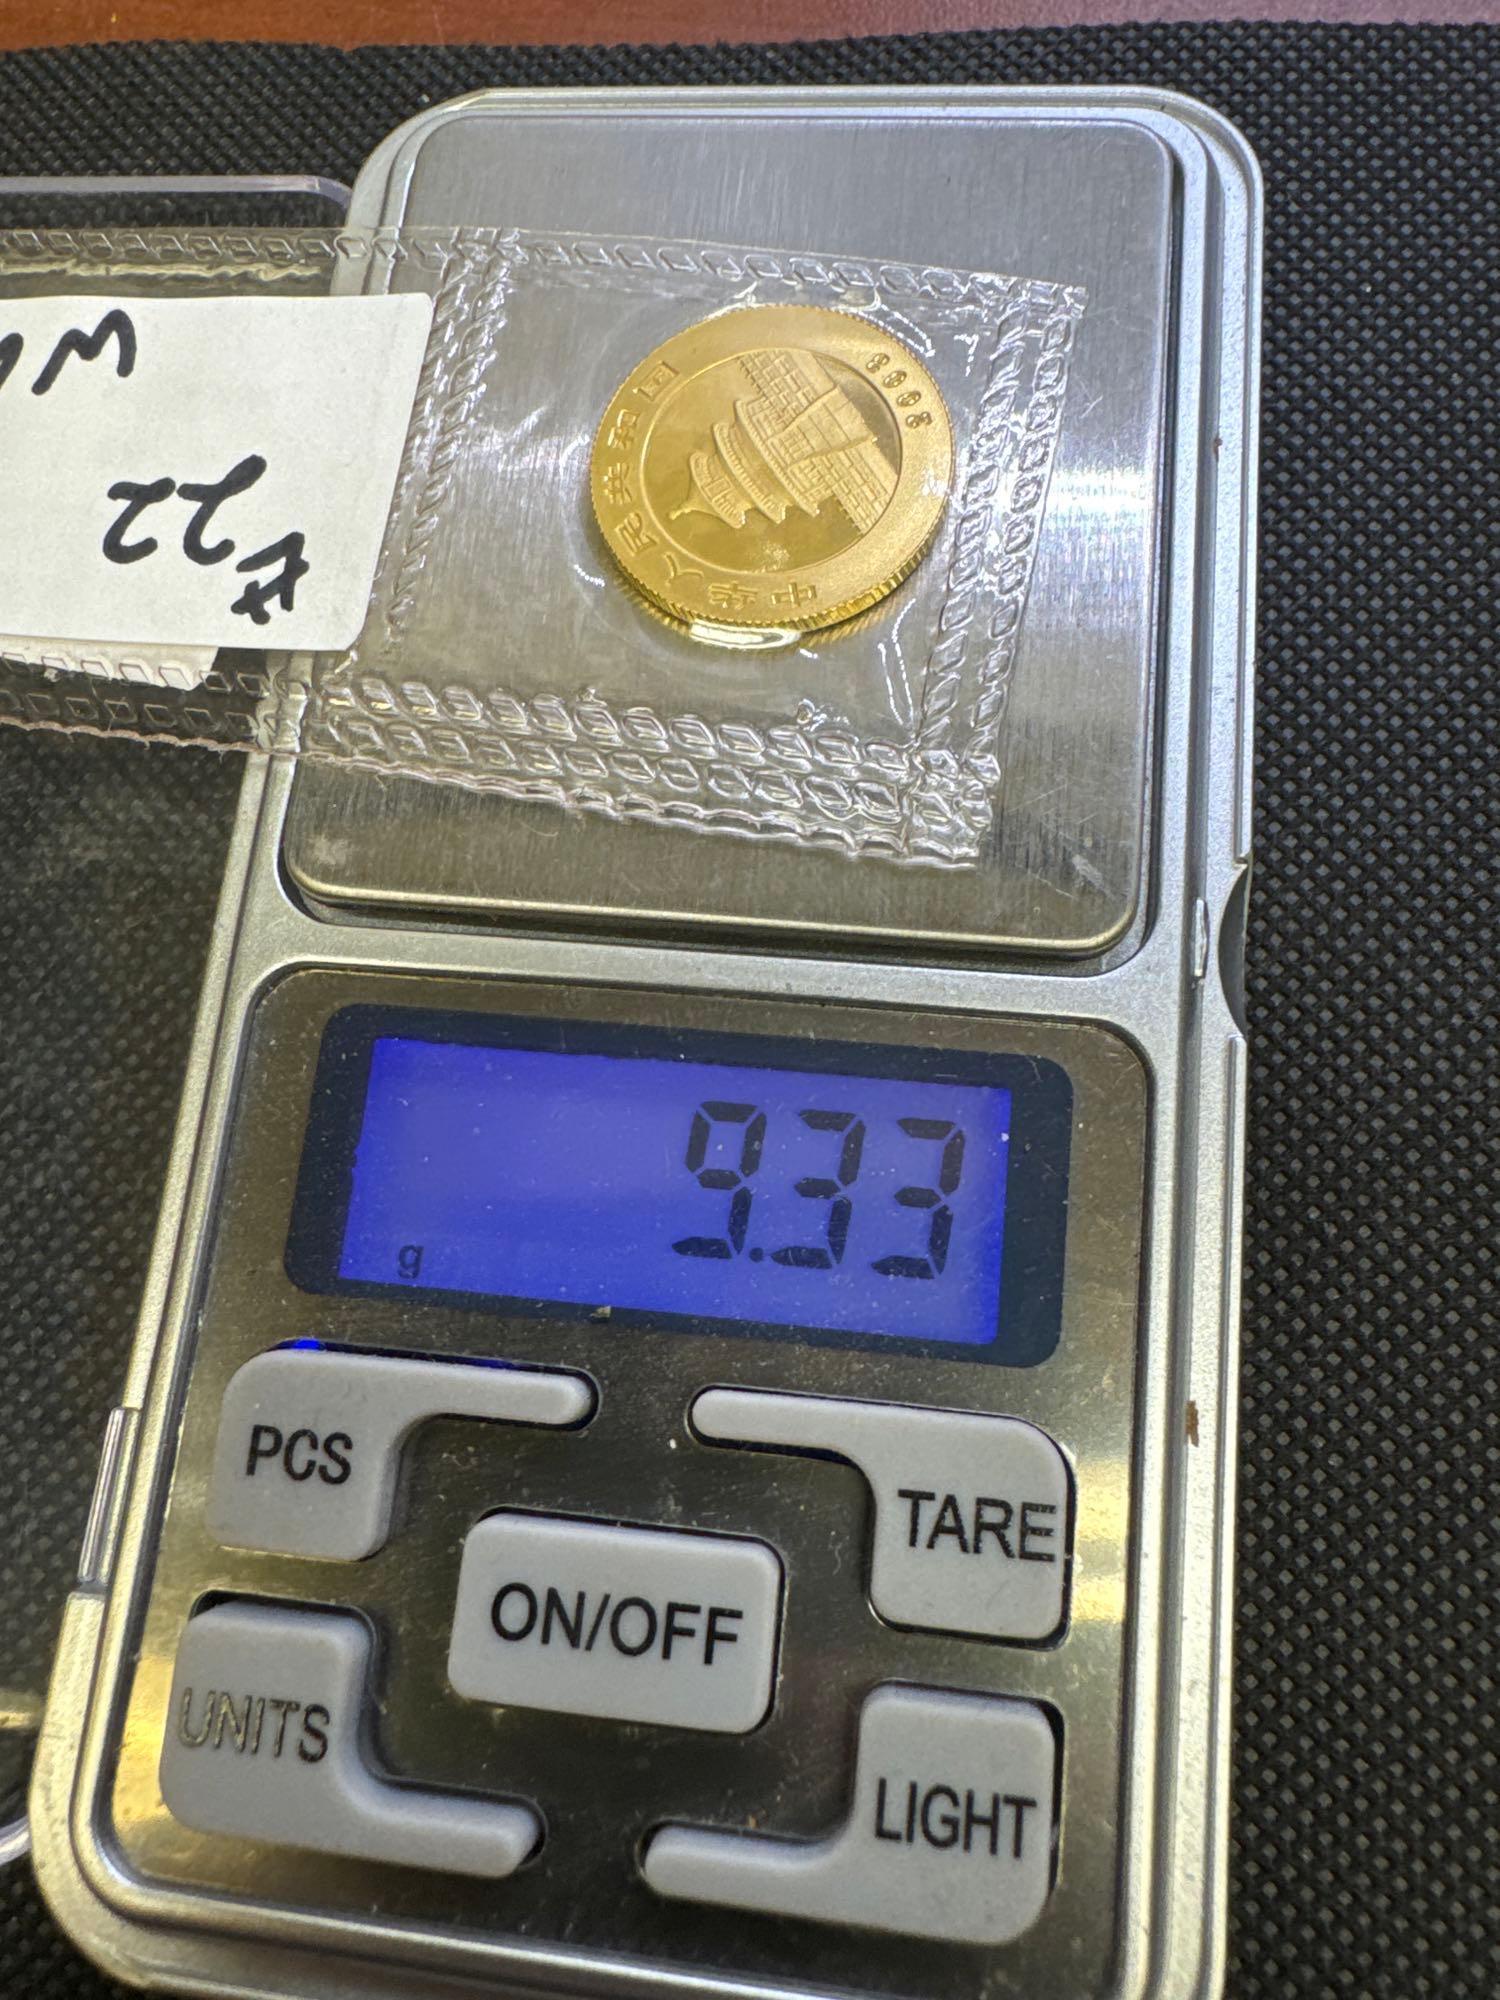 2003 1/4 Oz 999 Fine Gold Panda Bullion Coin